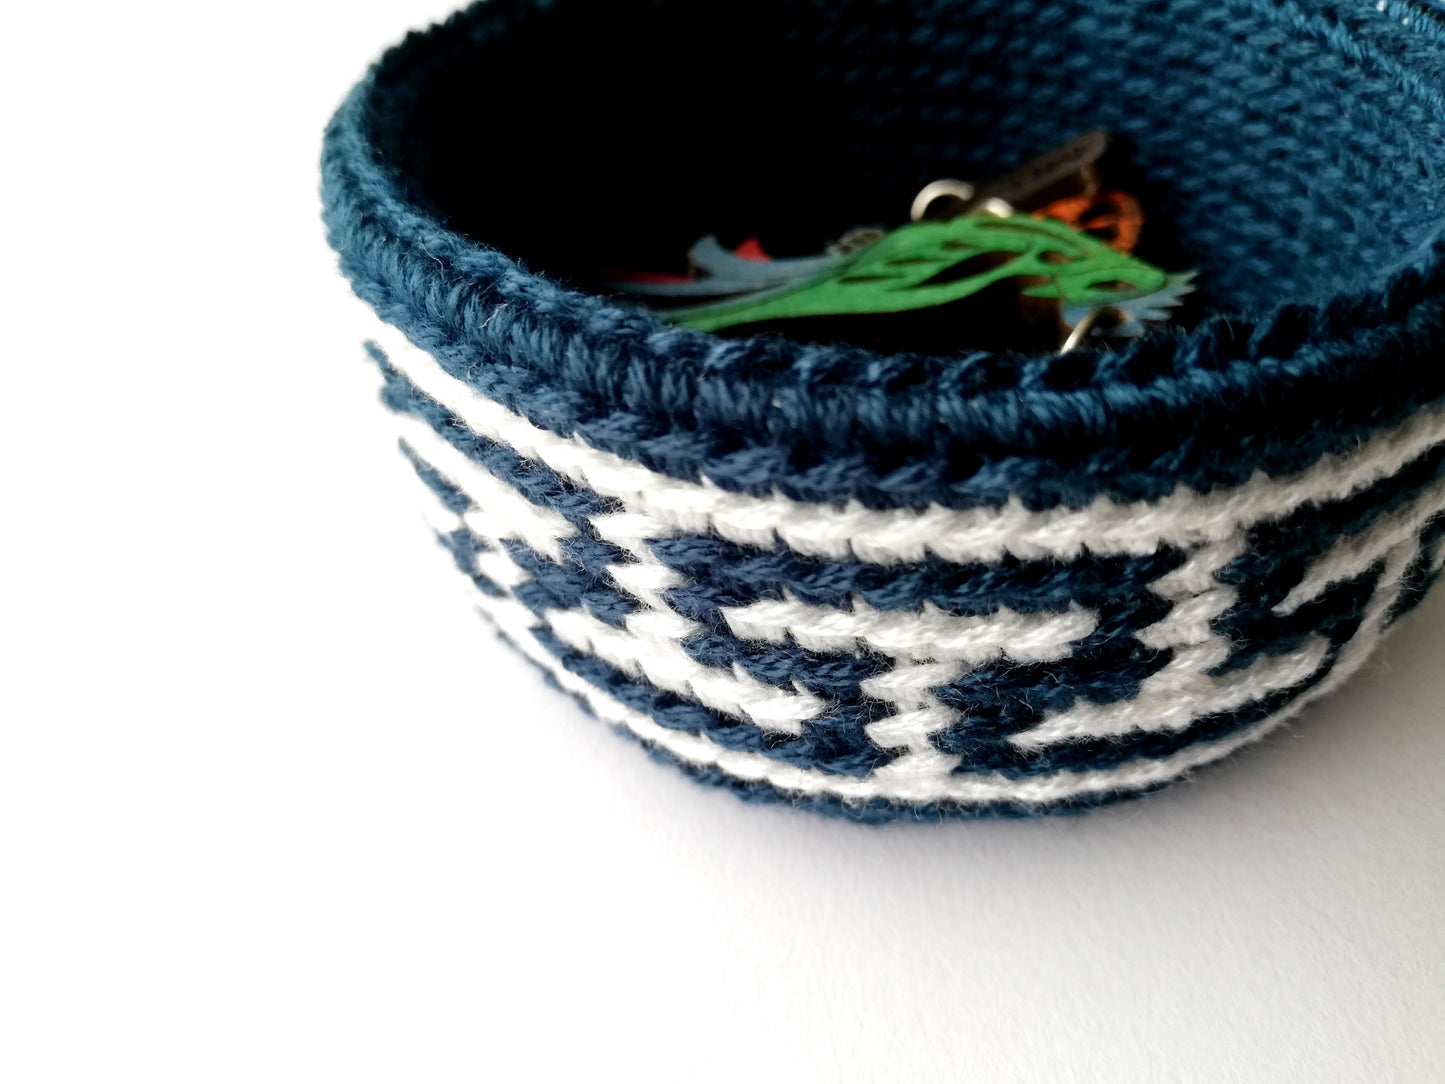 Canasta en crochet tapestry Meandro